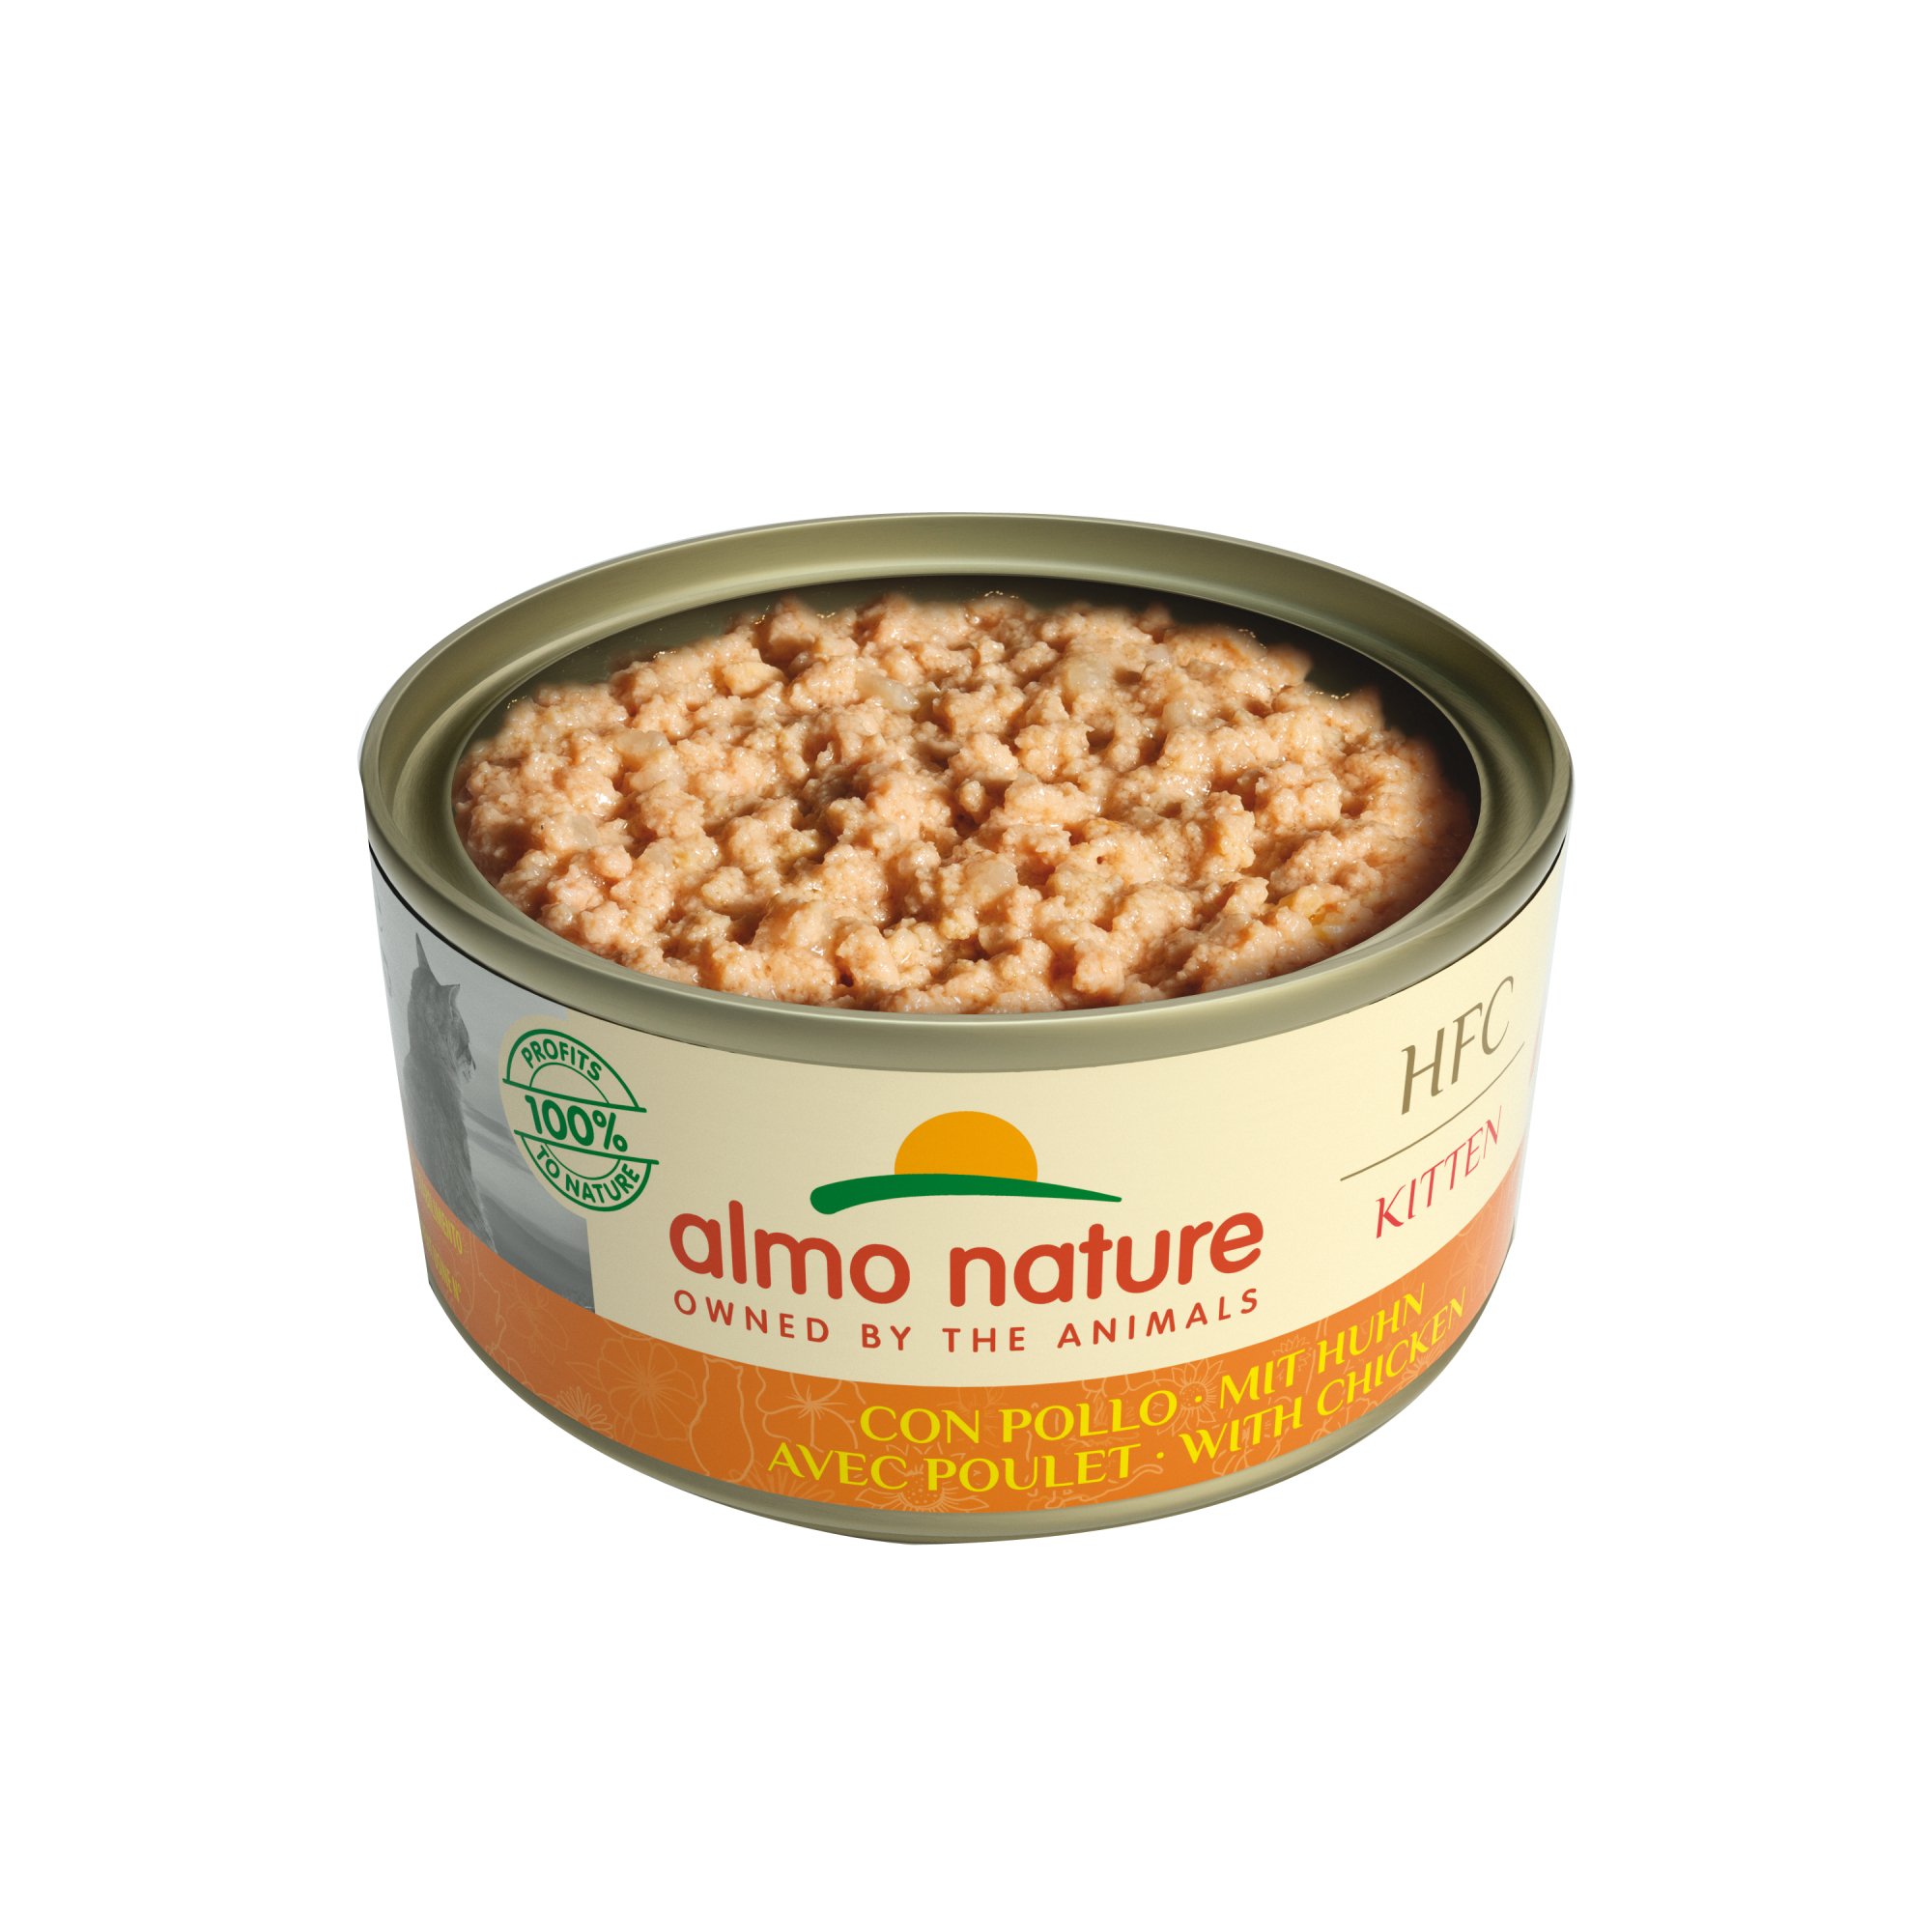 Almo Nature Classic für Kätzchen - mit Hühnchengeschmack